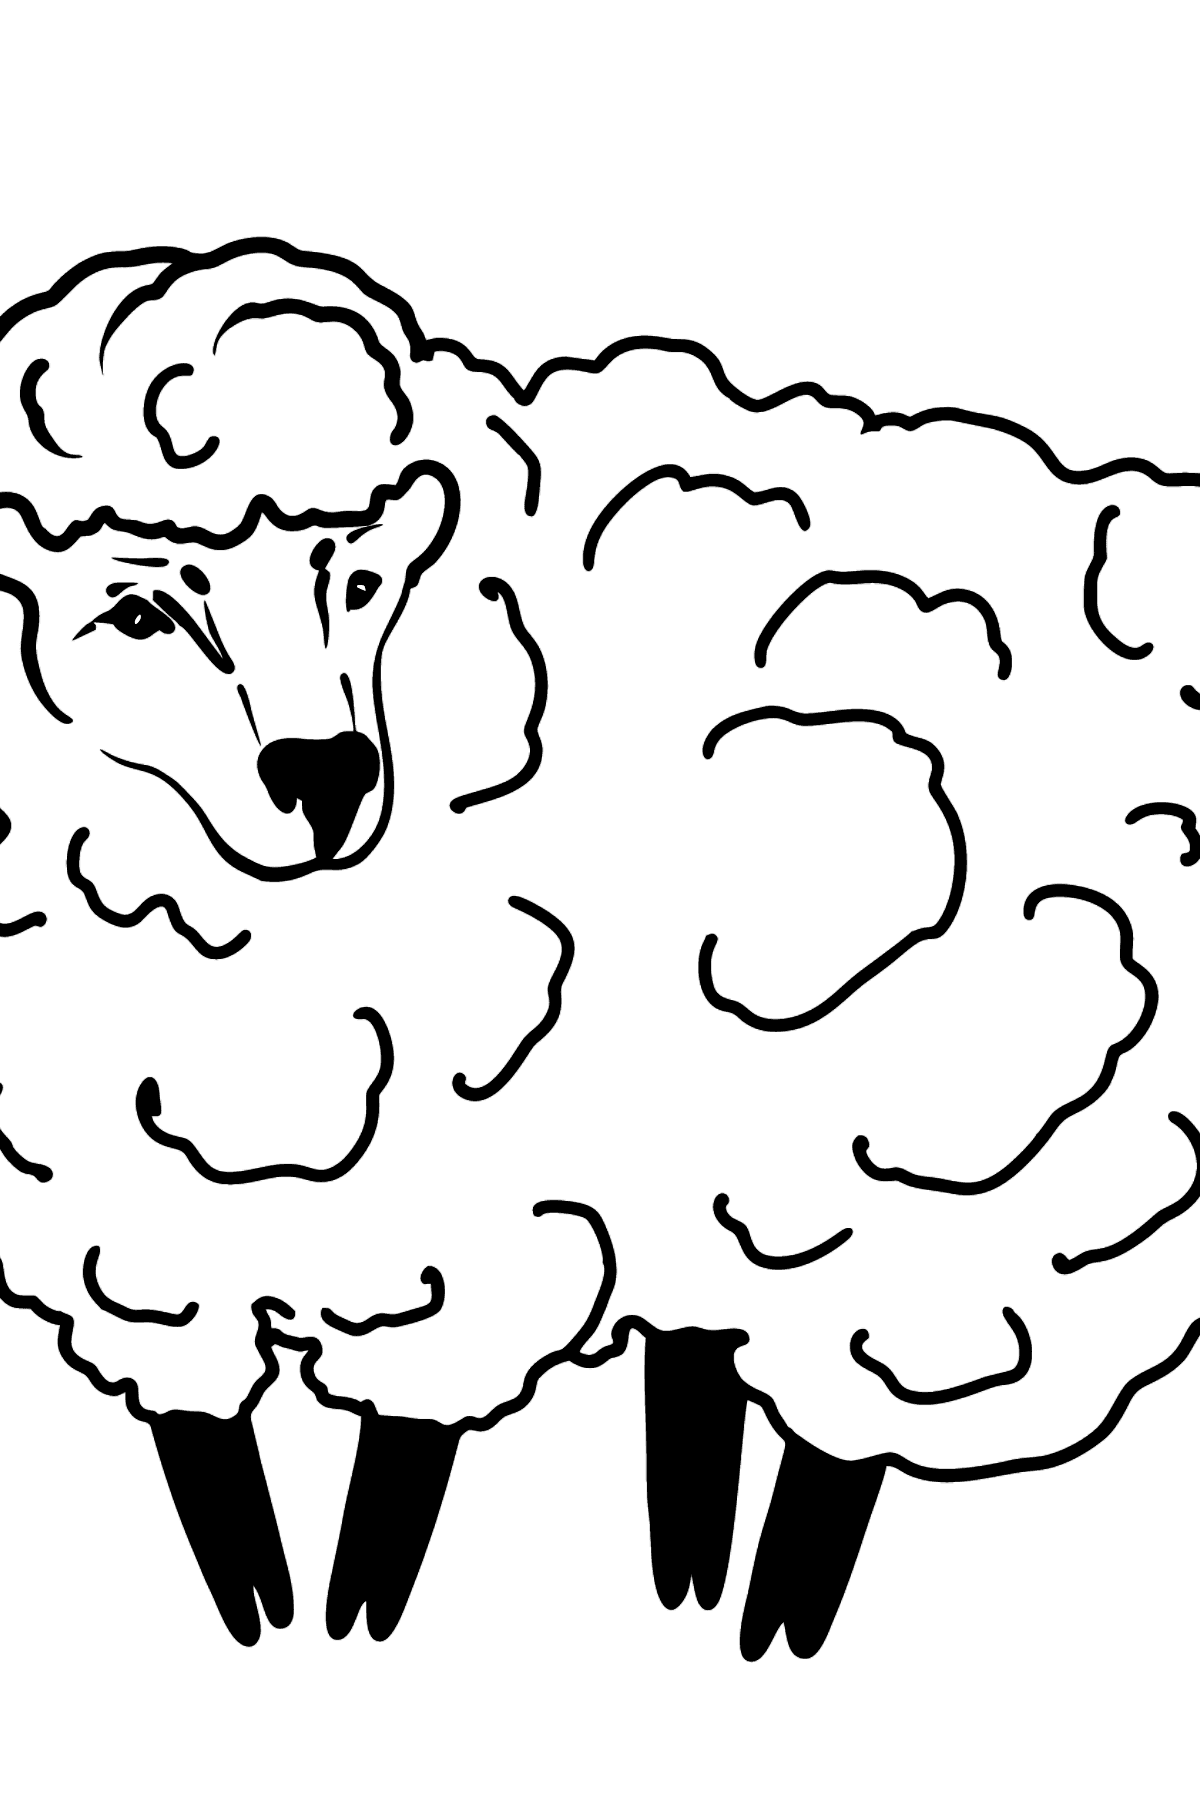 Ausmalbild Schafe - Malvorlagen für Kinder